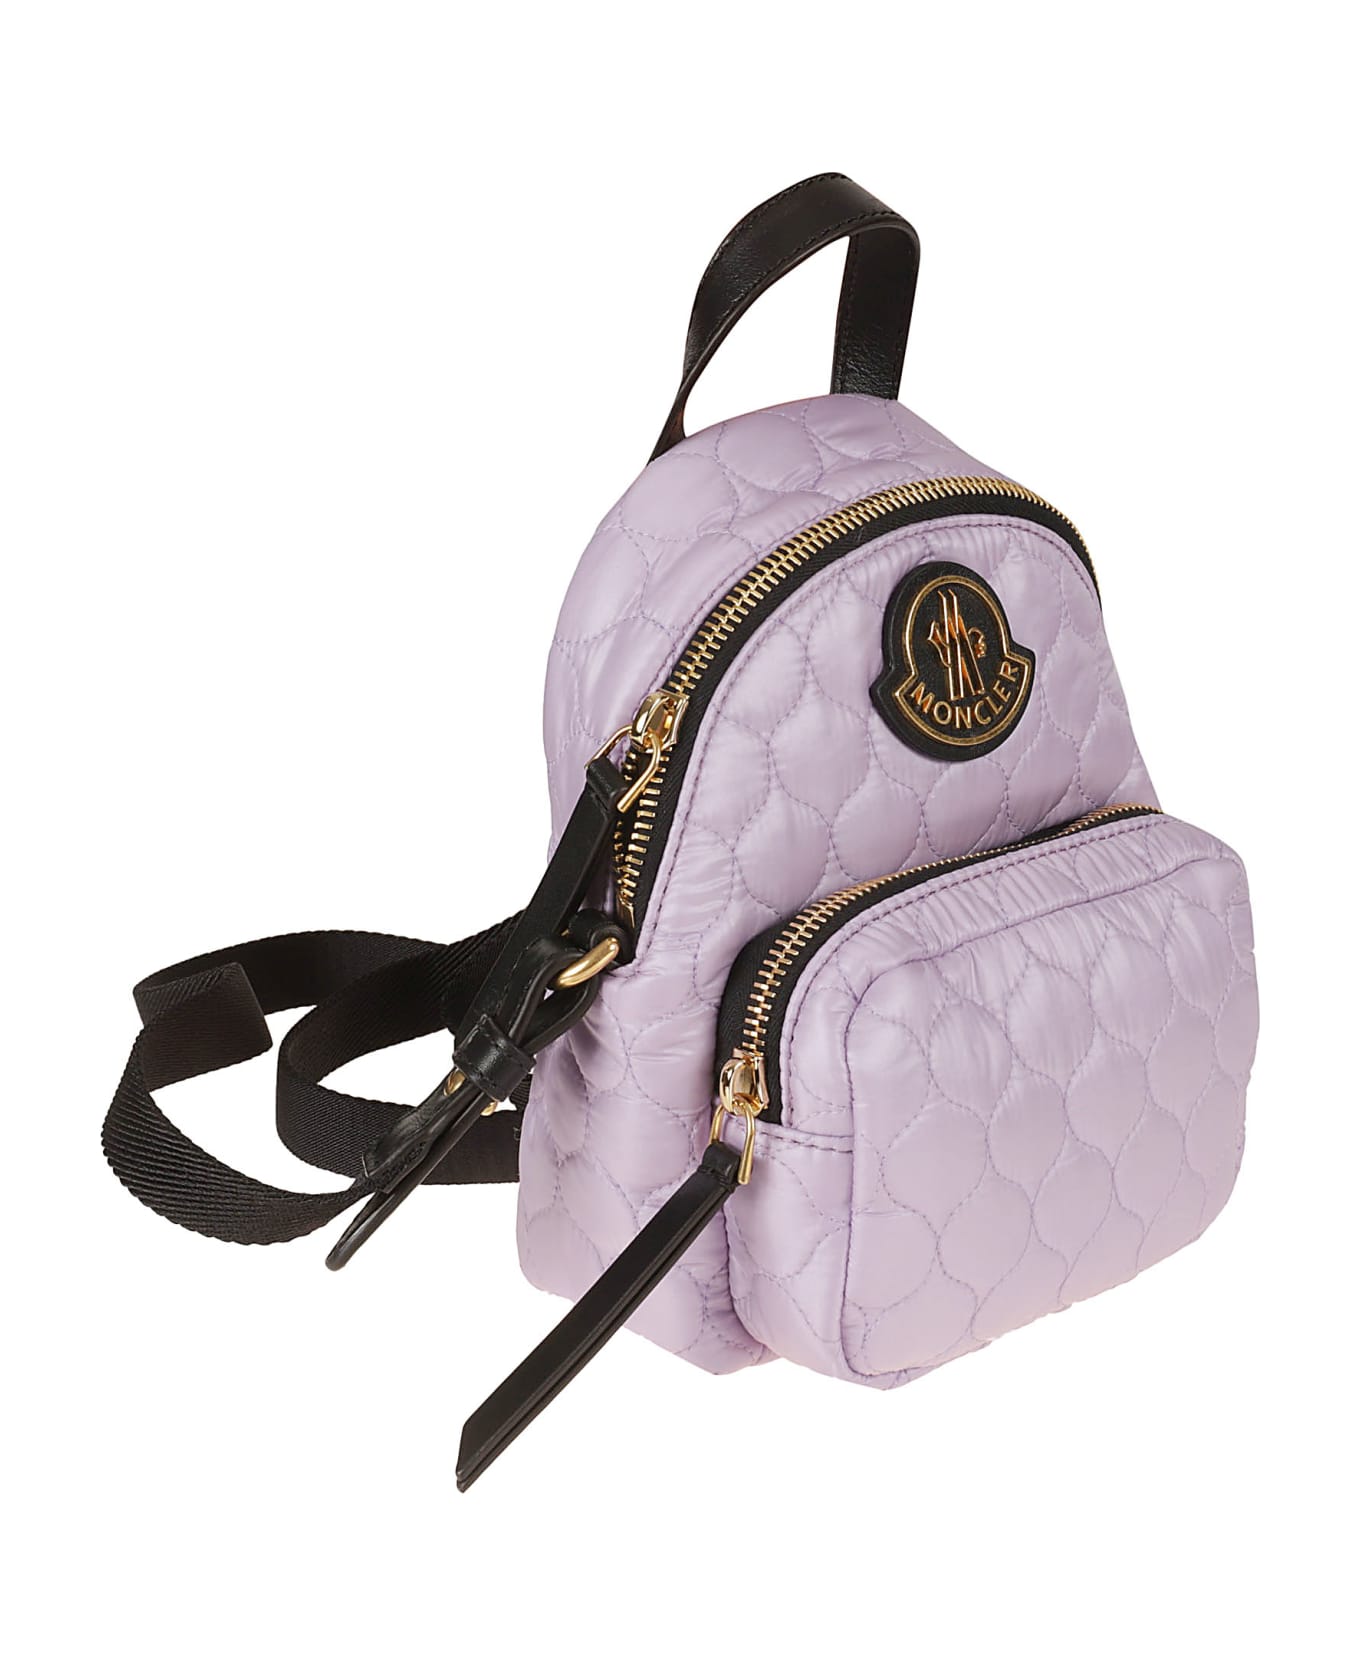 Moncler Kilia Small Backpack - 61A